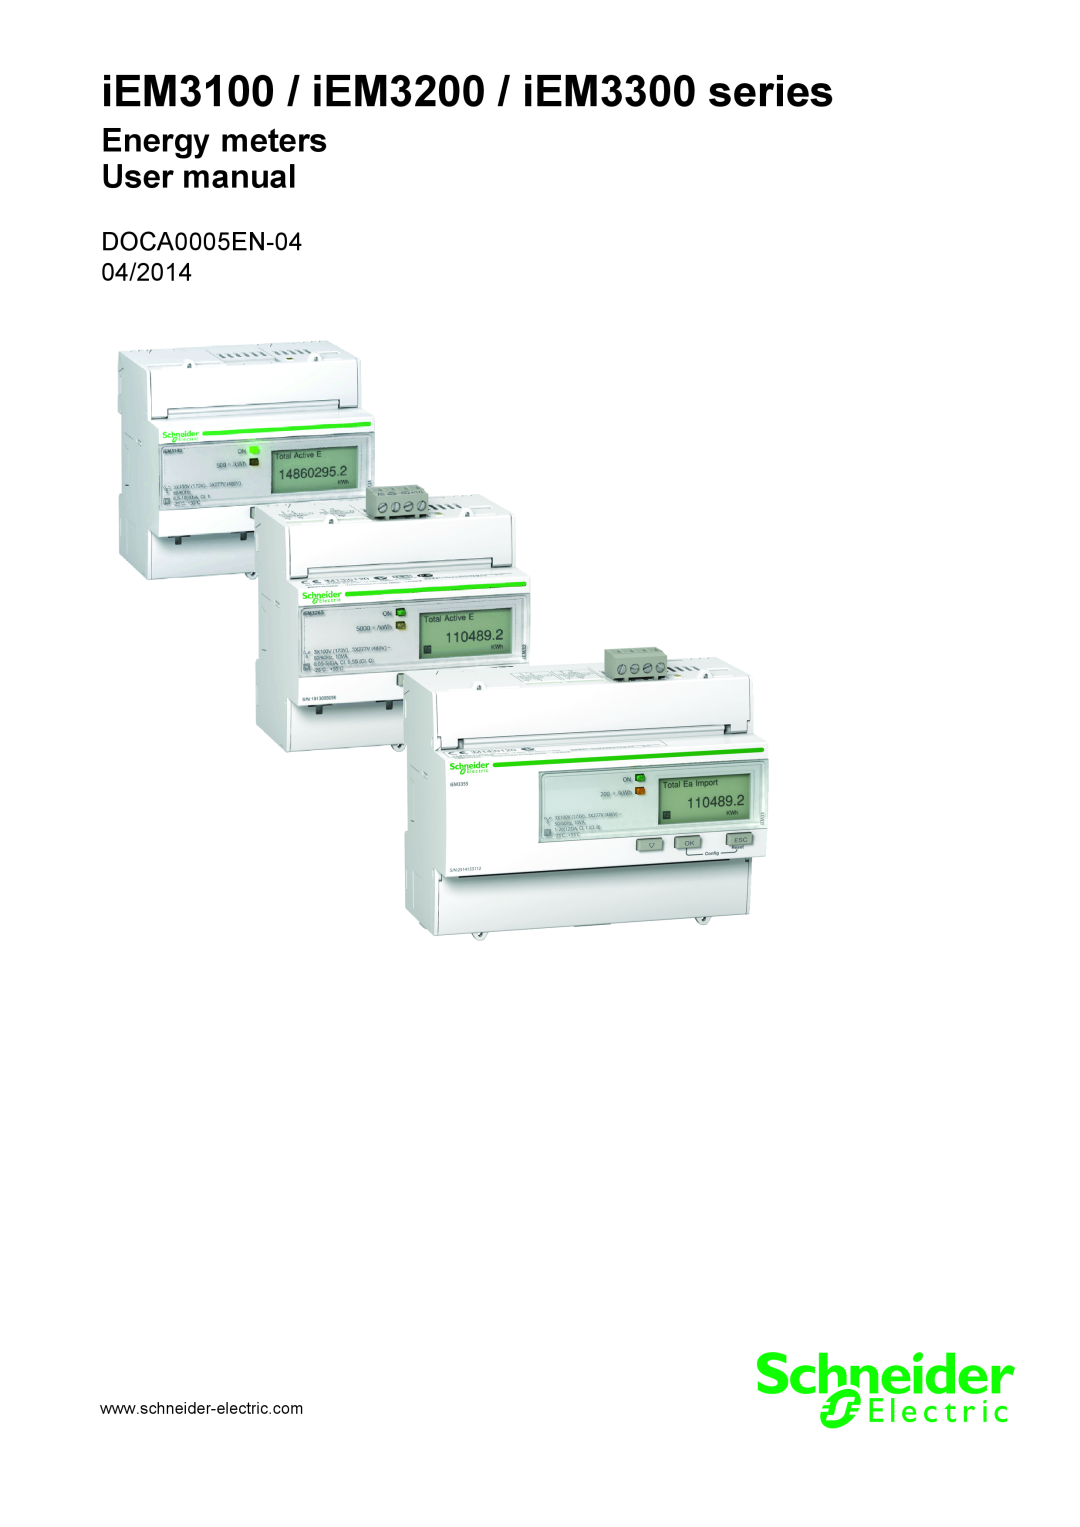 Schneider Electric user manual iEM3100 / iEM3200 / iEM3300 series, DOCA0005EN-0404/2014 